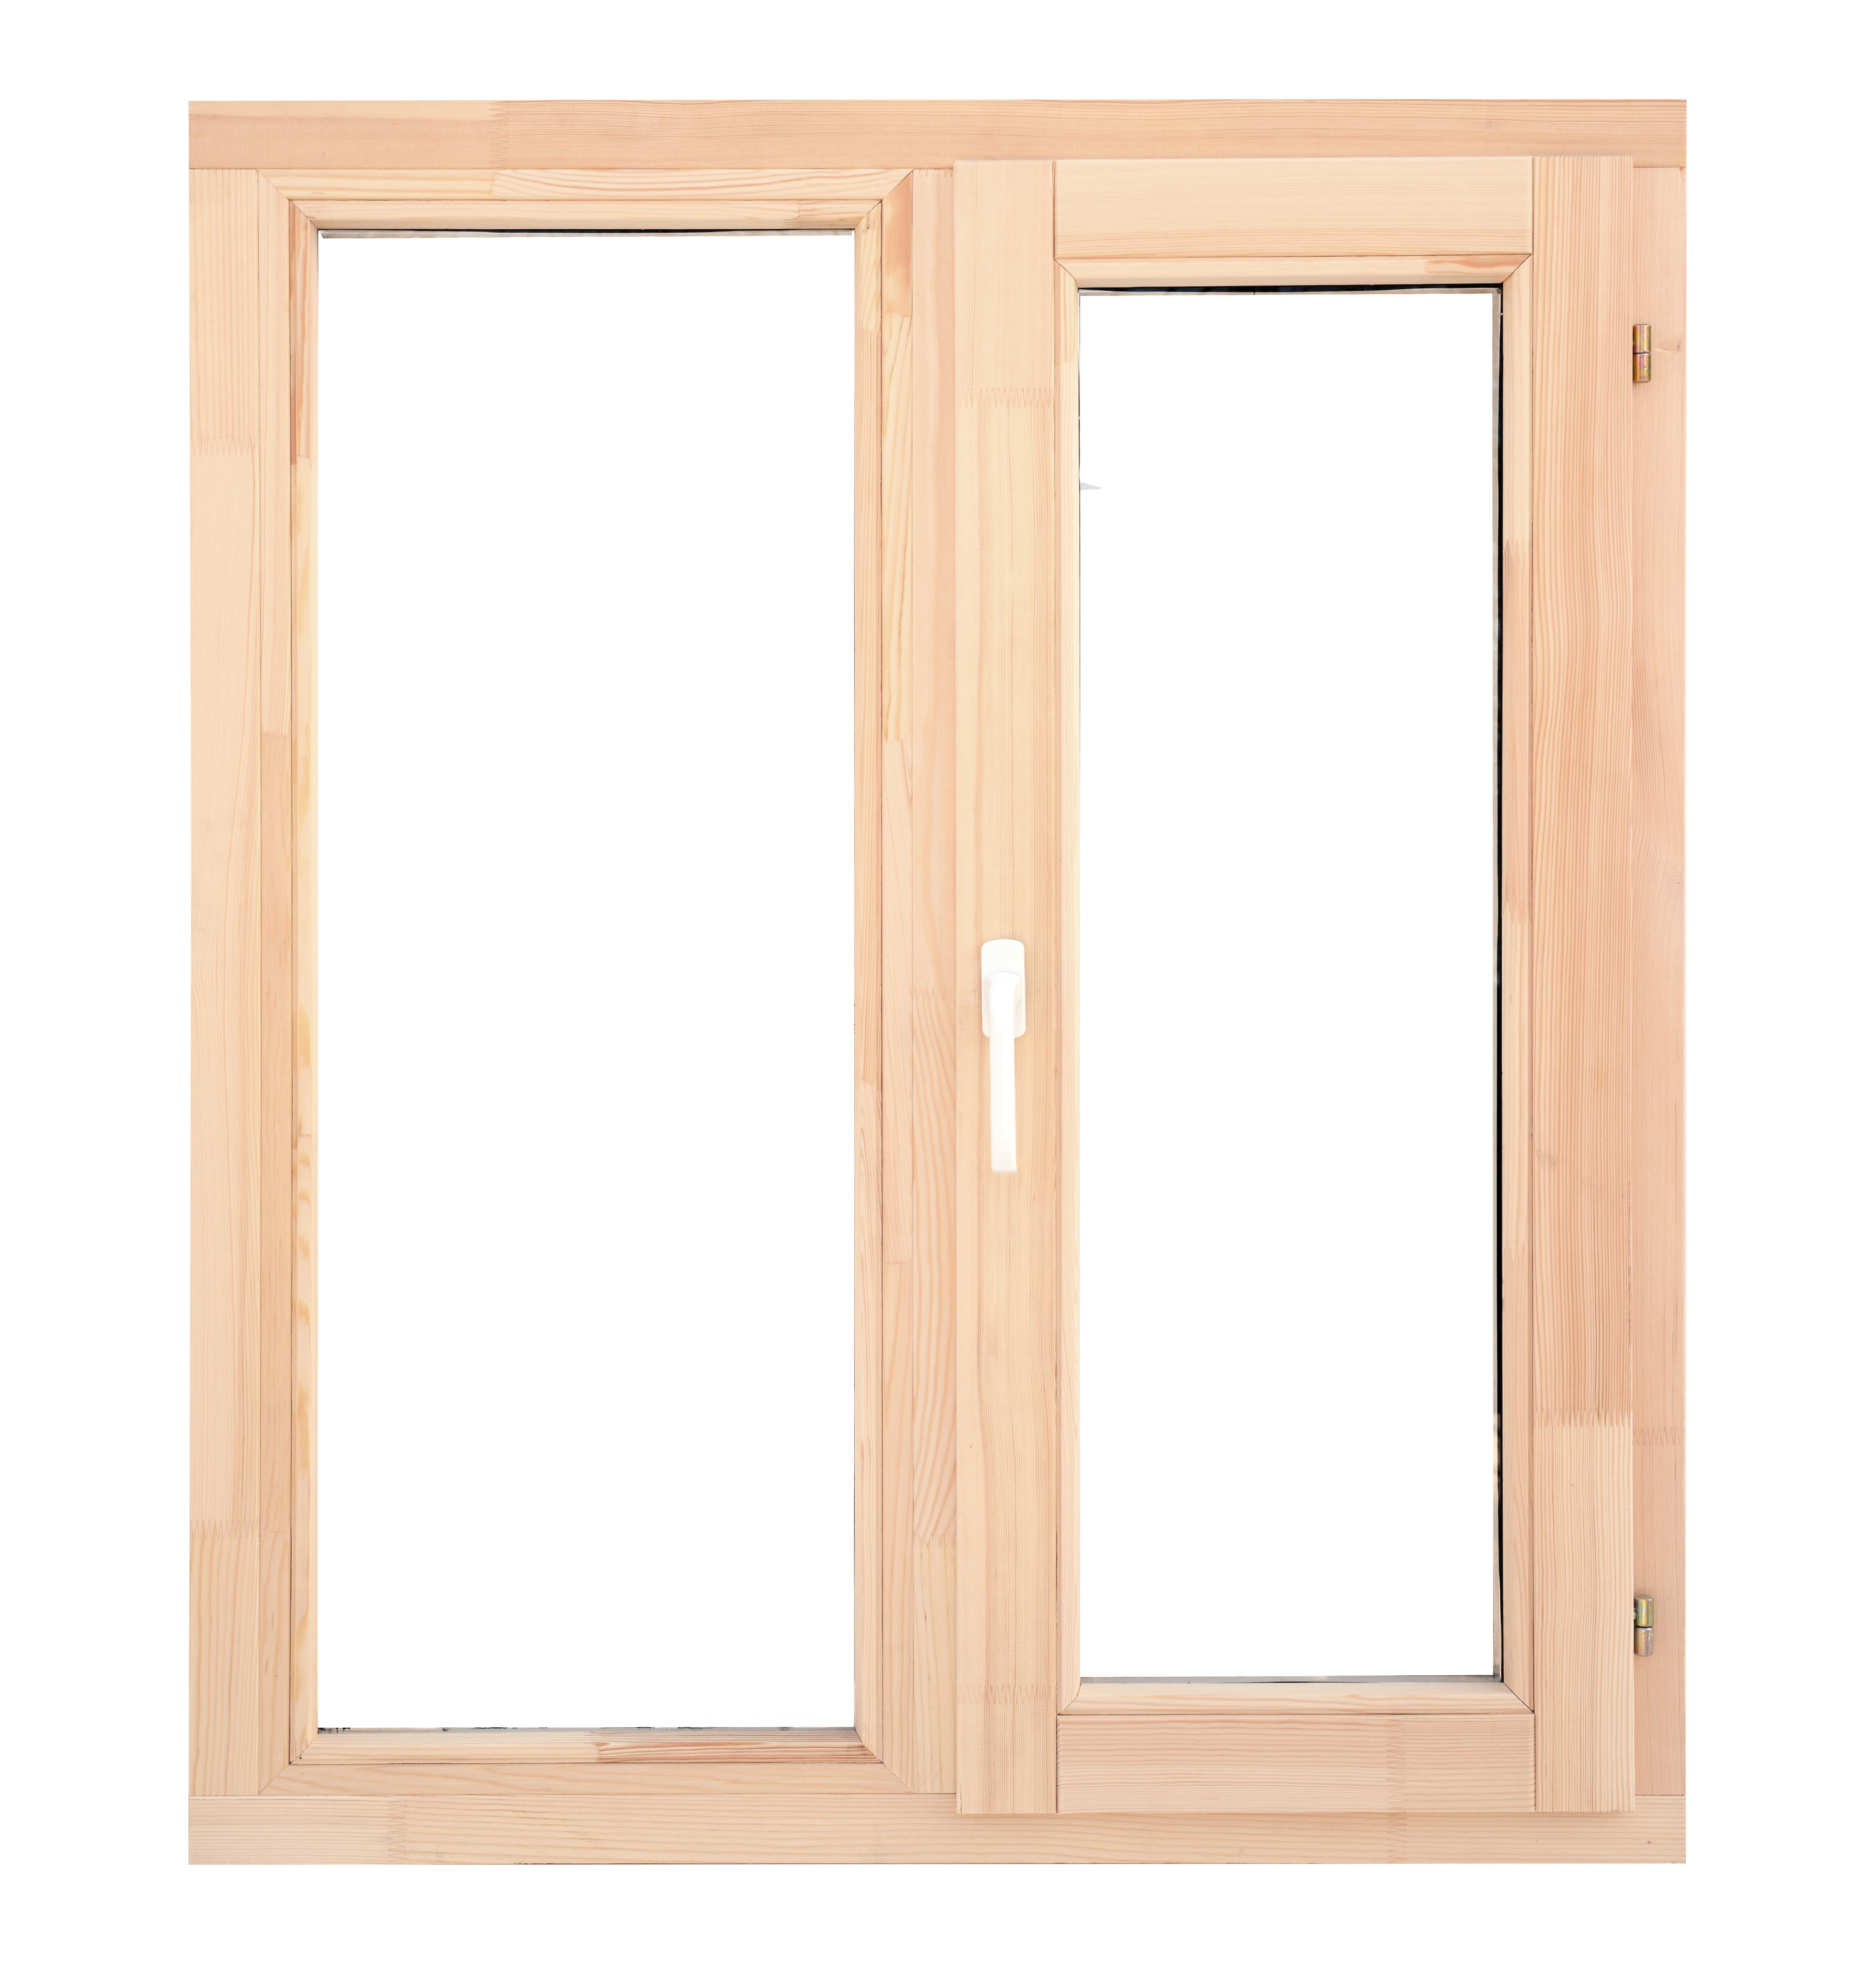 Что лучше: деревянные окна или стеклопакеты?